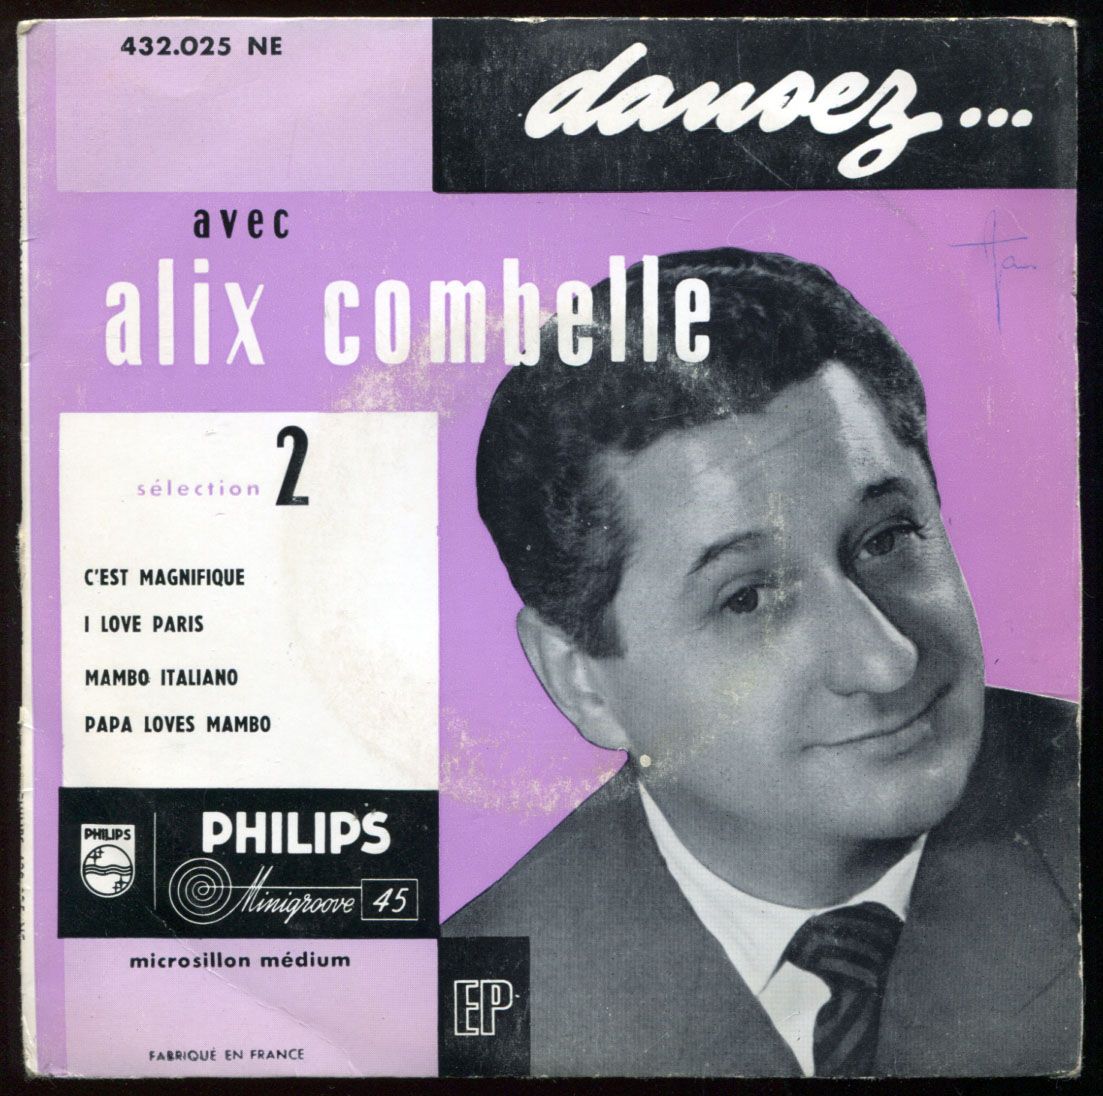 ALIX COMBELLE - Dansez... 2 cover 